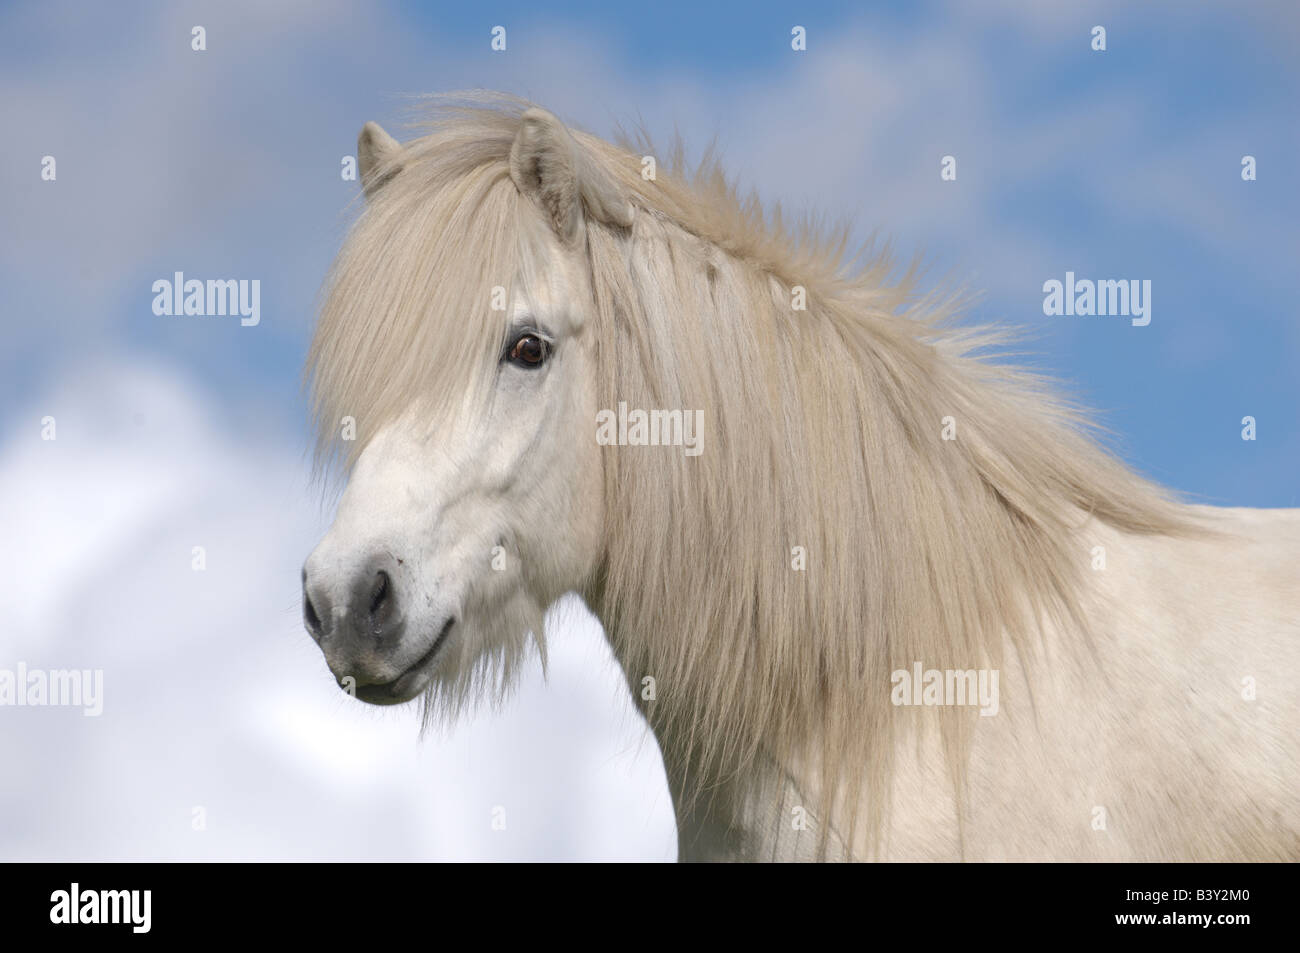 Icelandic Horse (Equus caballus), portrait of a white gelding Stock Photo